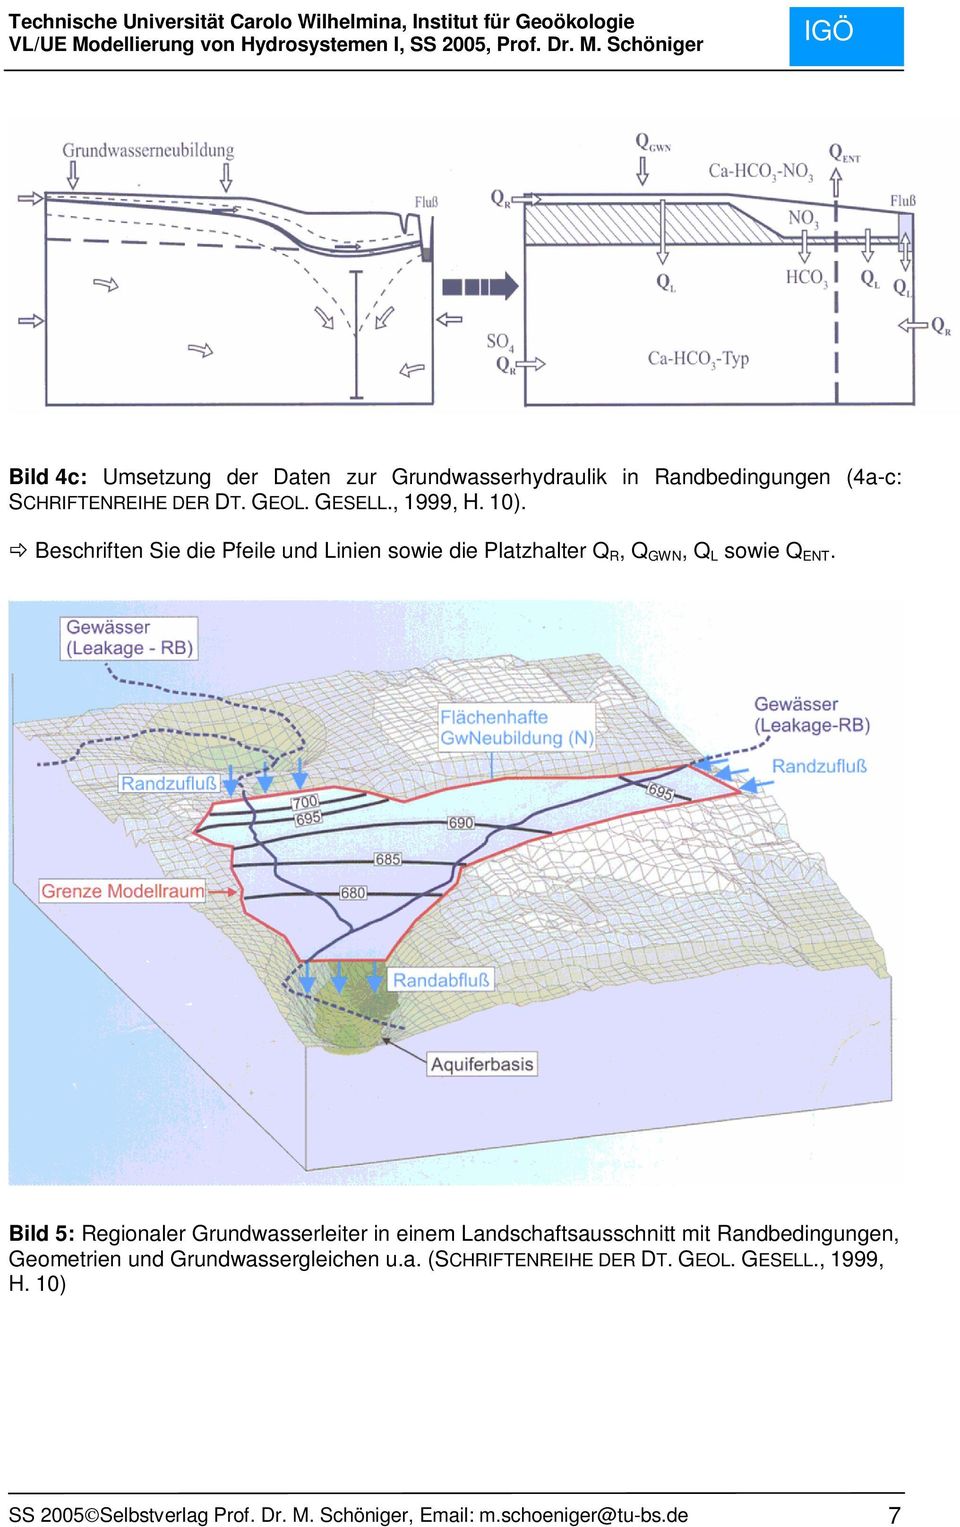 Bild 5: Regionaler Grundwasserleiter in einem Landschaftsausschnitt mit Randbedingungen, Geometrien und